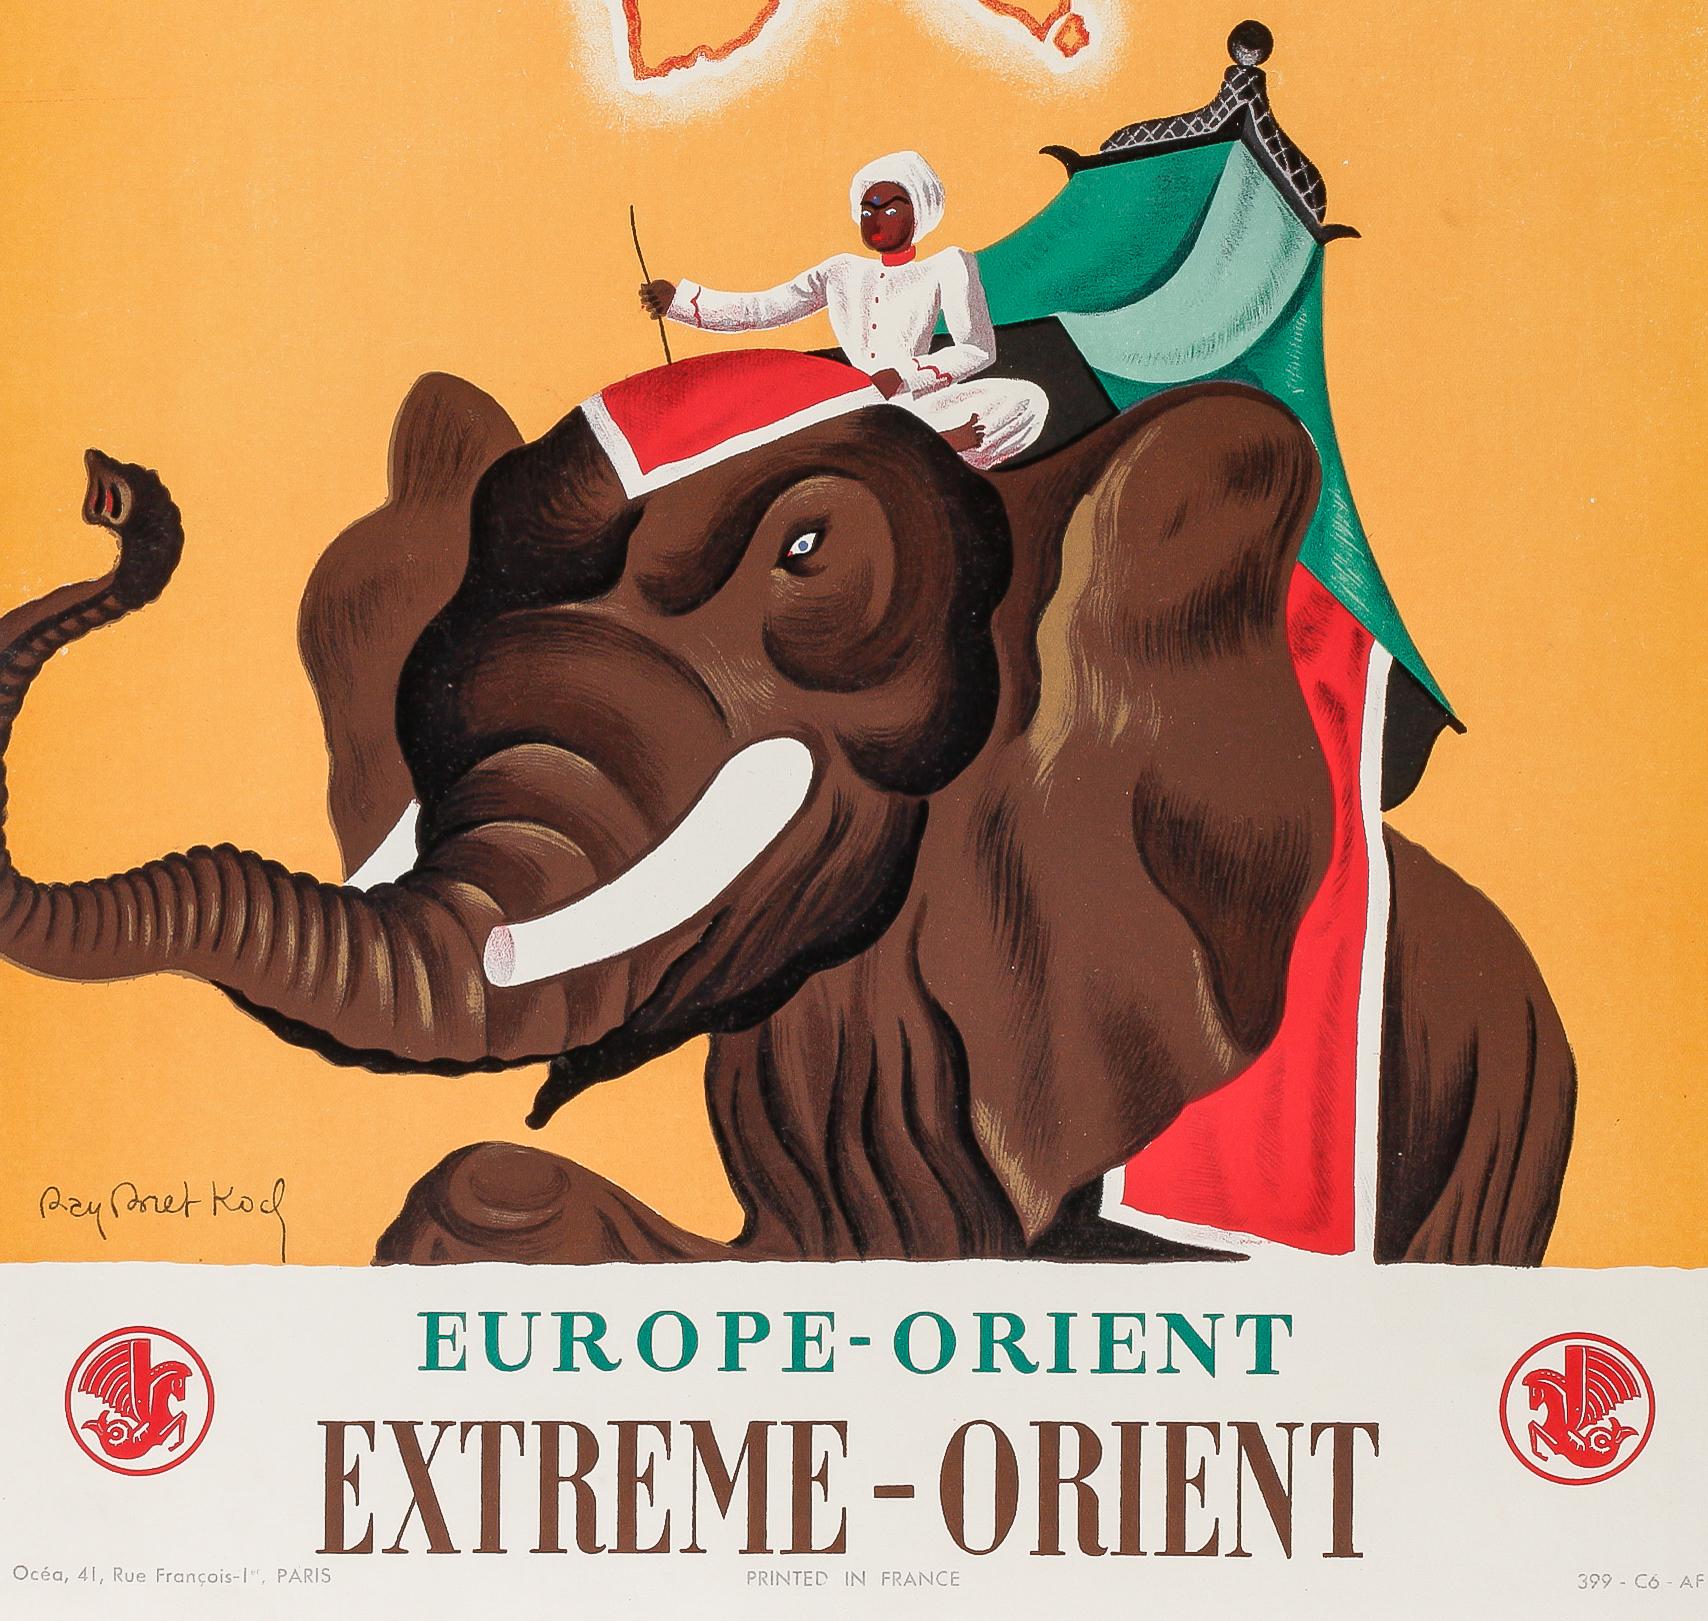 Affiche d'Air France créée par Ray Bret Koch en 1938 pour promouvoir le tourisme de l'Europe vers l'Extrême-Orient.

Artistics : Ray Bret Koch (1902-1996)
Titre : Air France - Europe - Orient - Extrême Orient
Date : 1938
Taille : 12.3 x 19.4 in. /